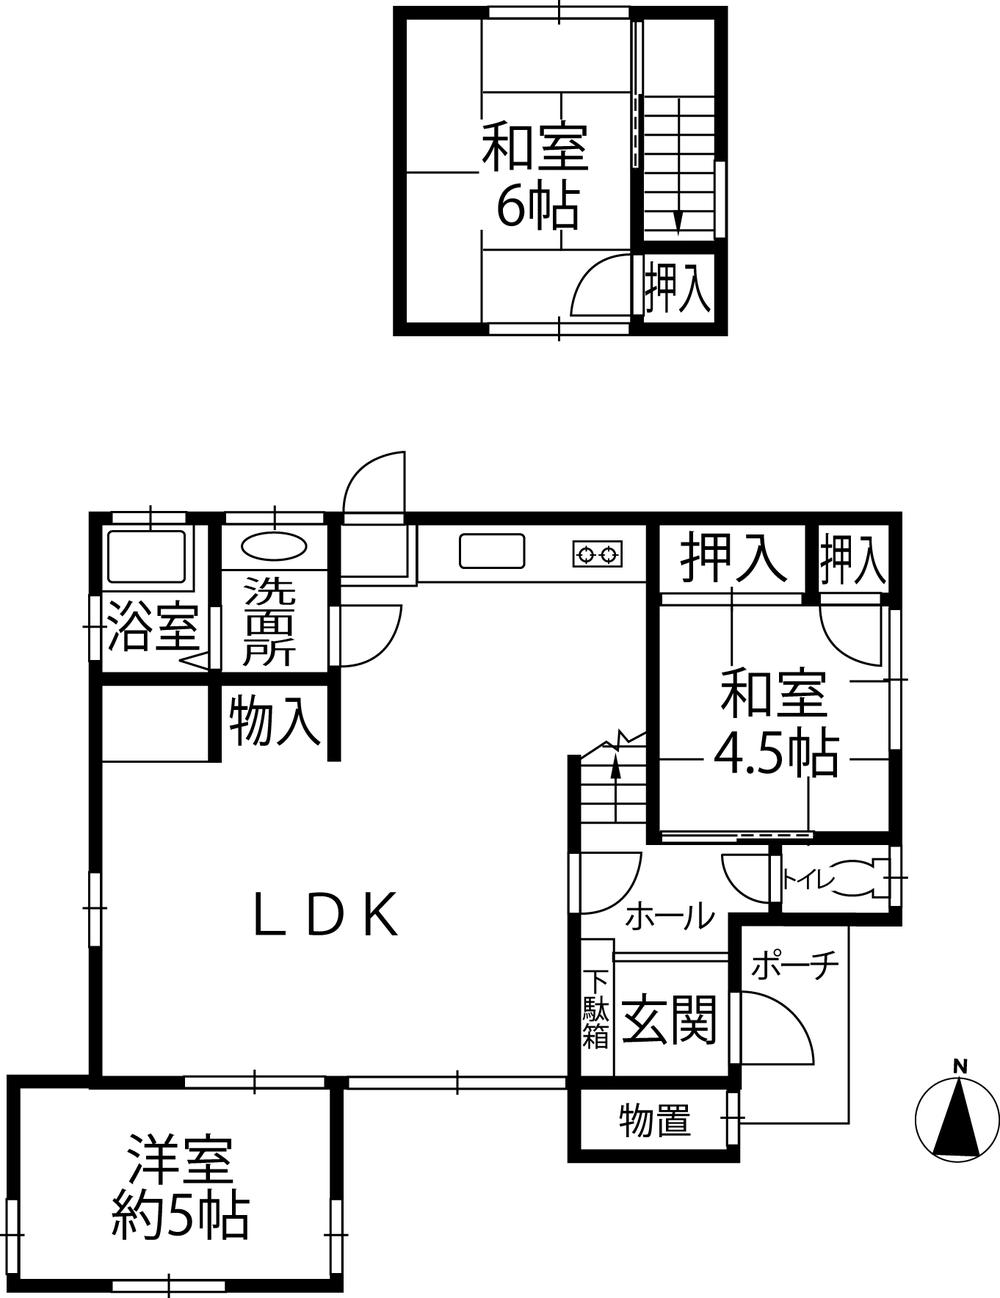 Floor plan. 7.8 million yen, 3LDK, Land area 141.25 sq m , Building area 67.89 sq m